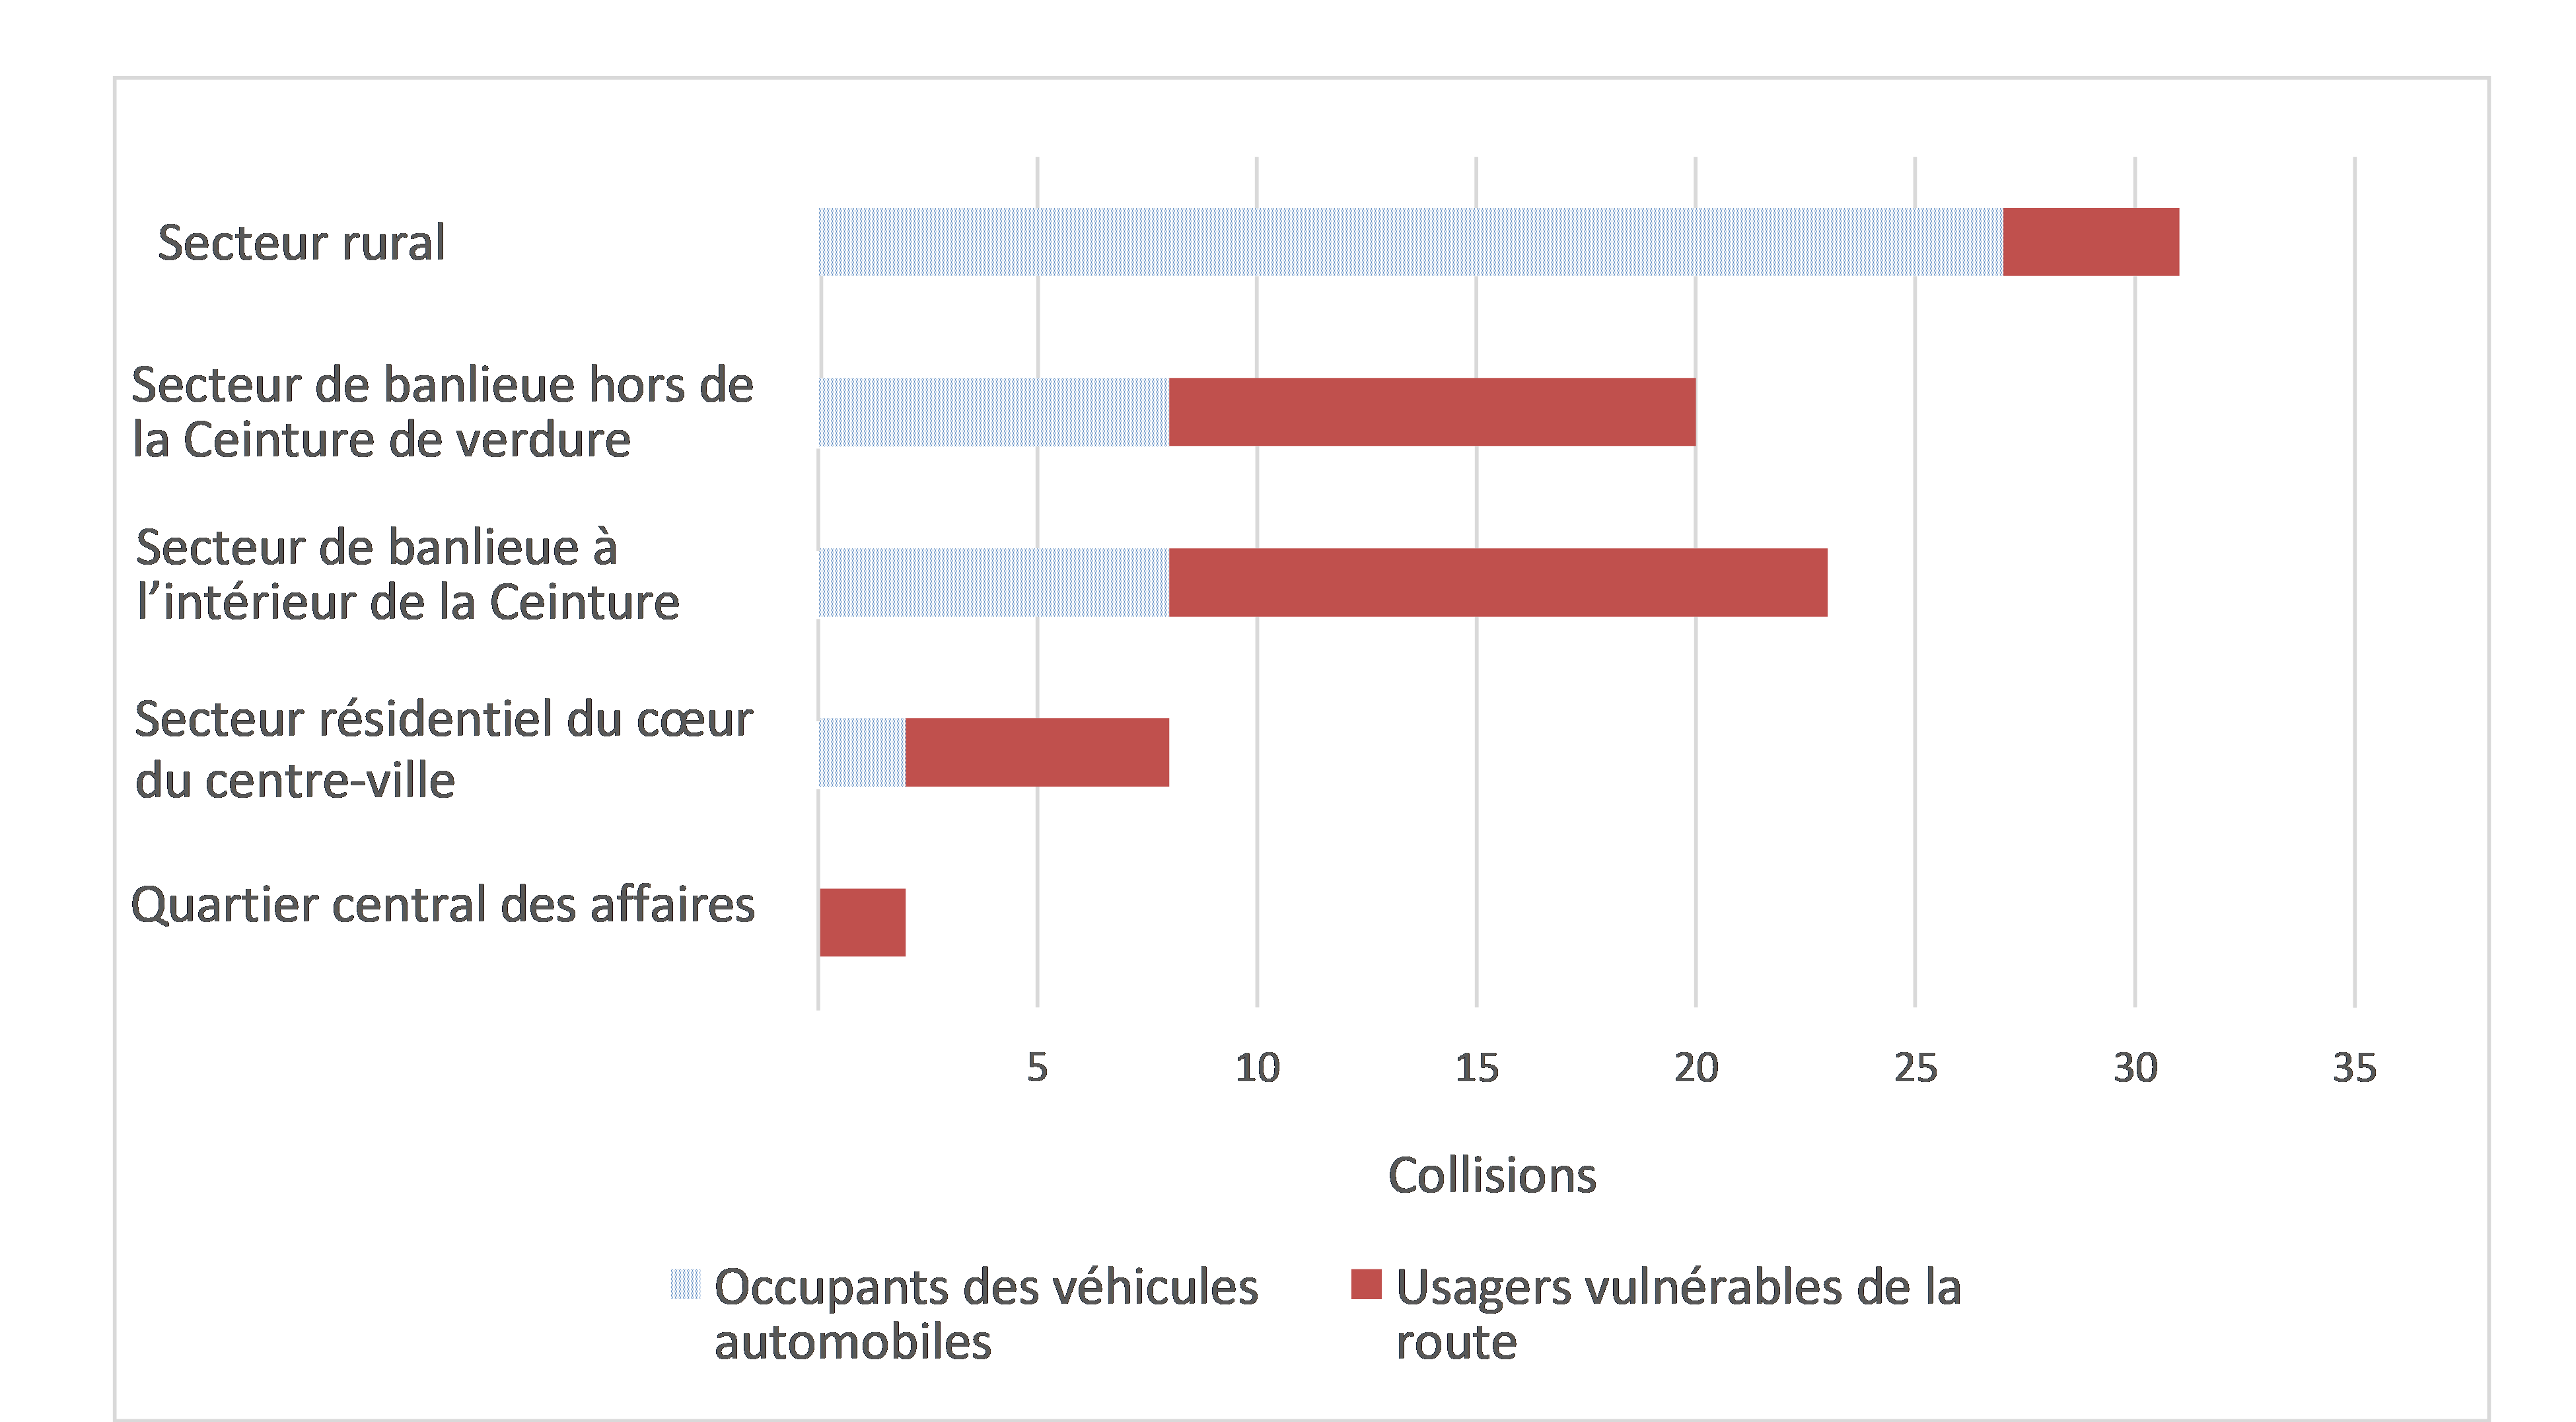 Figure 4 illustre la répartition des collisions mortelles par secteur géographique et par type d’usager de la route (occupants des véhicules automobiles et usagers vulnérables de la route). 